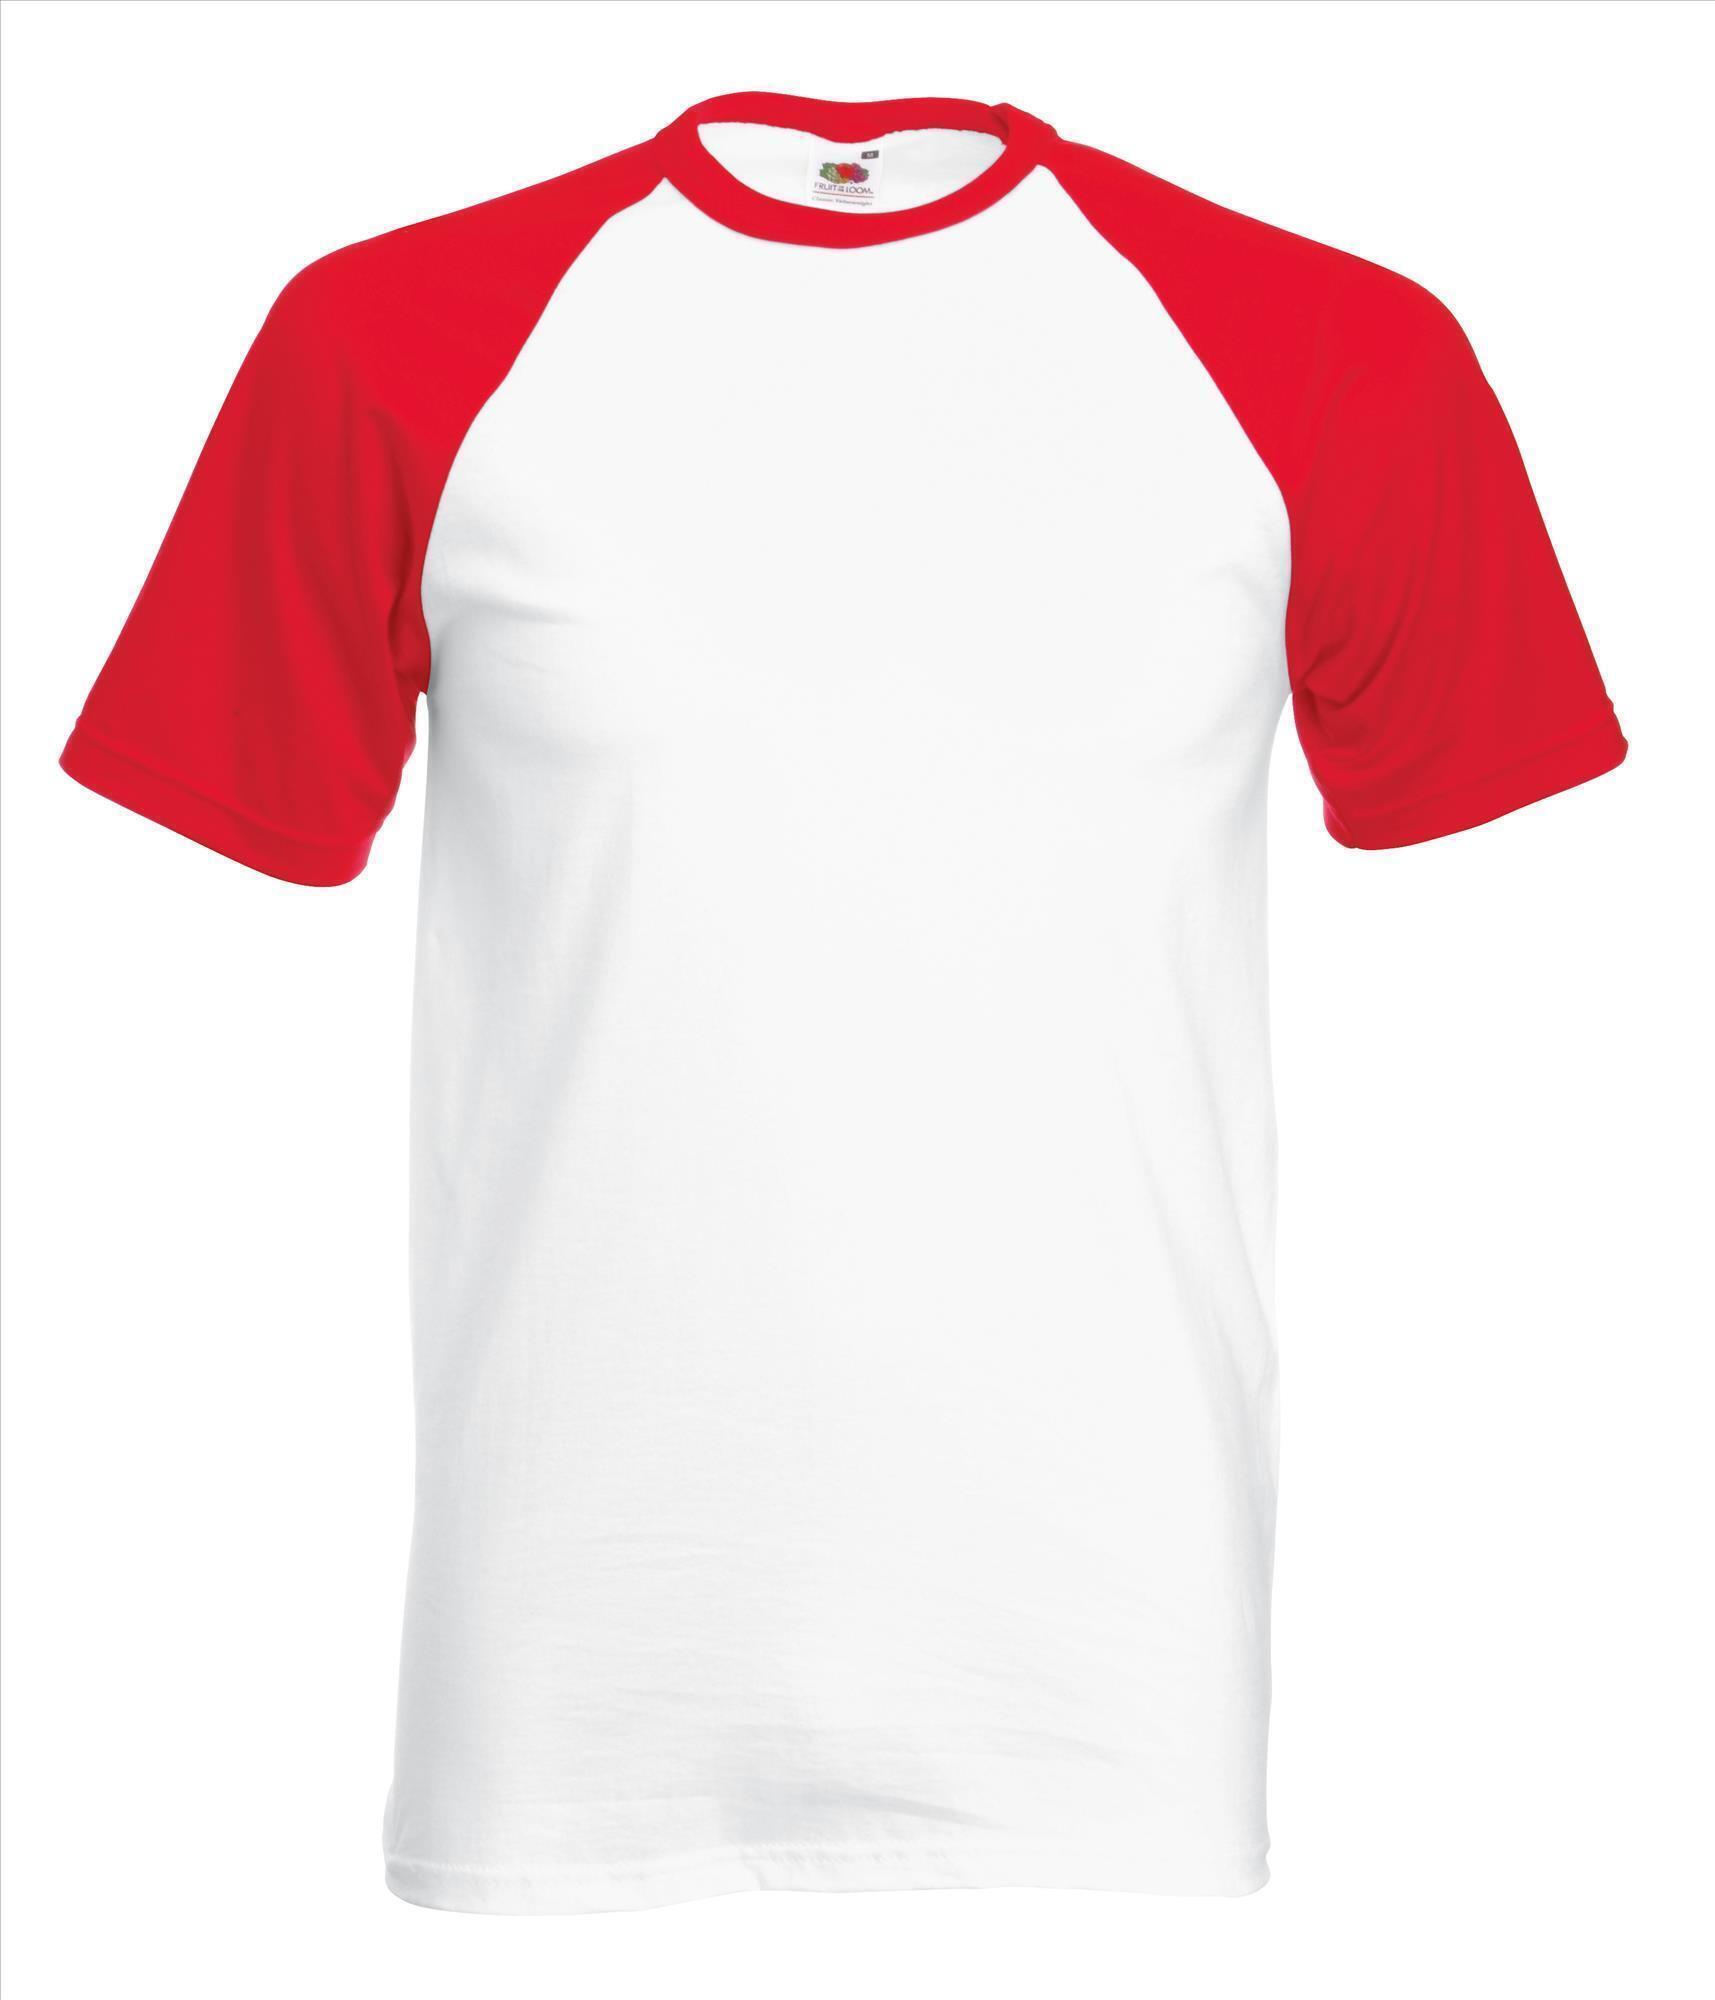 Heren T-shirt met raglanmouwen voor mannen wit shirtje met rode mouwen